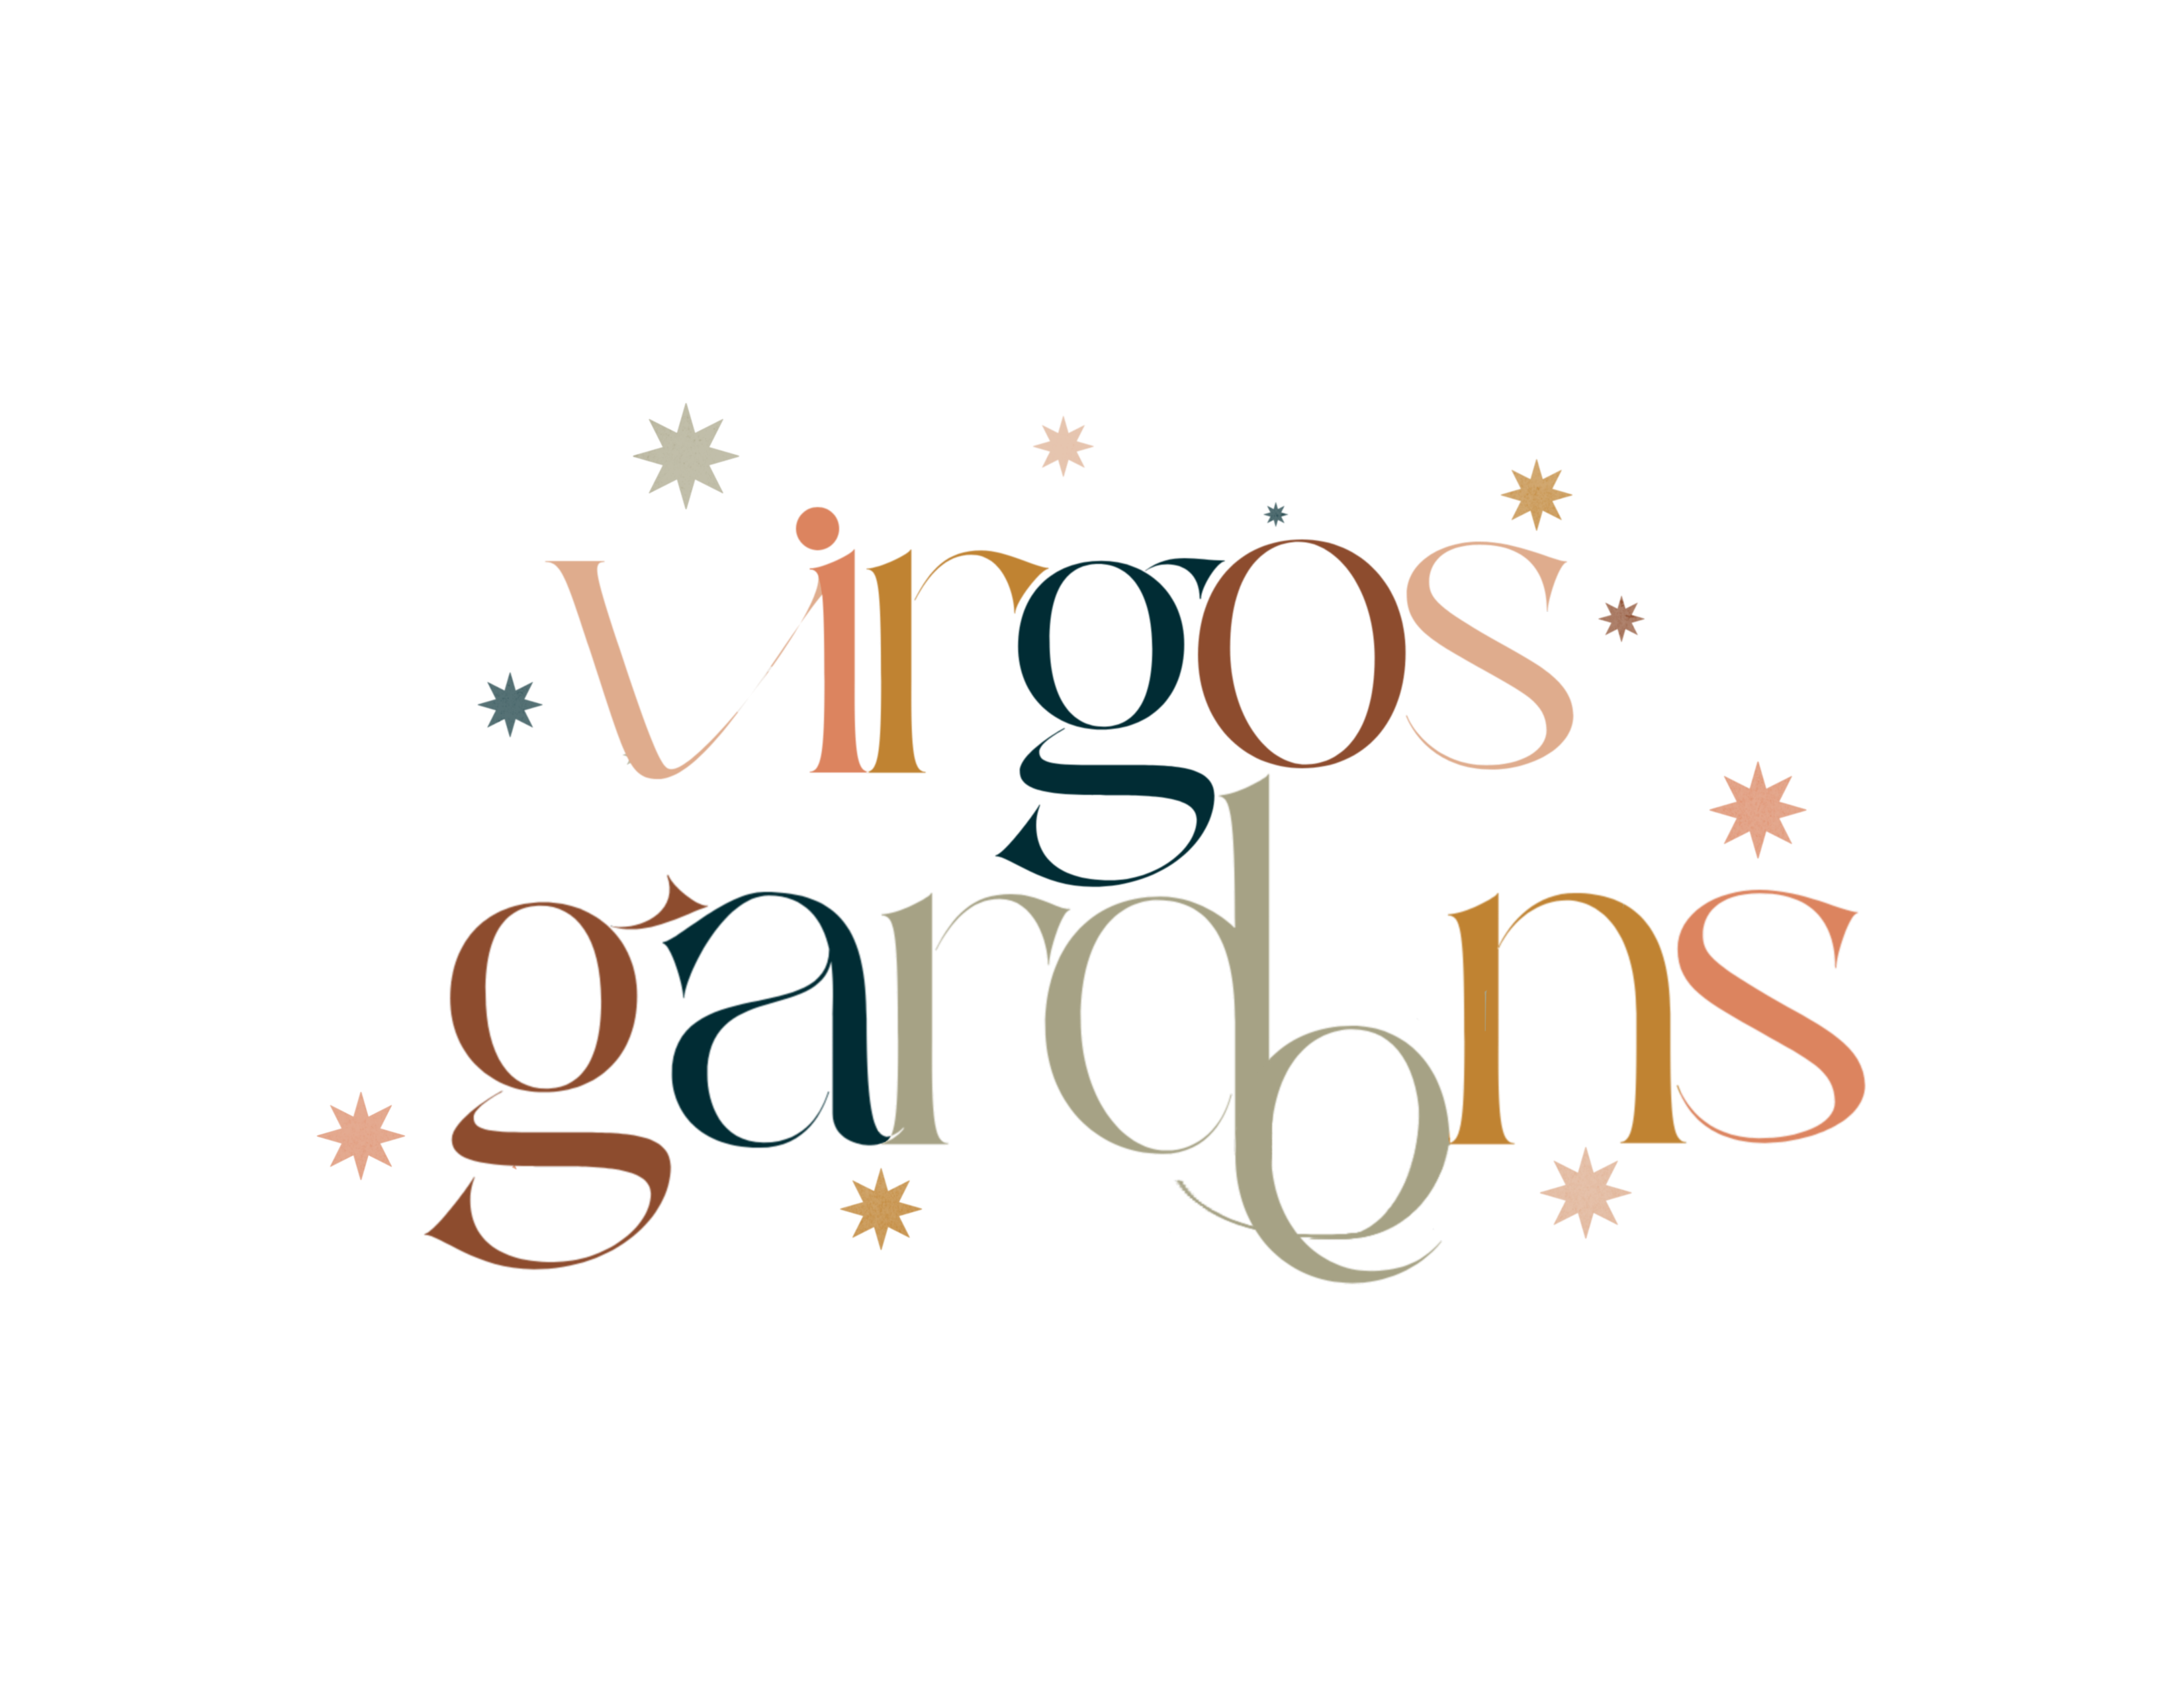 Virgo’s Gardens 